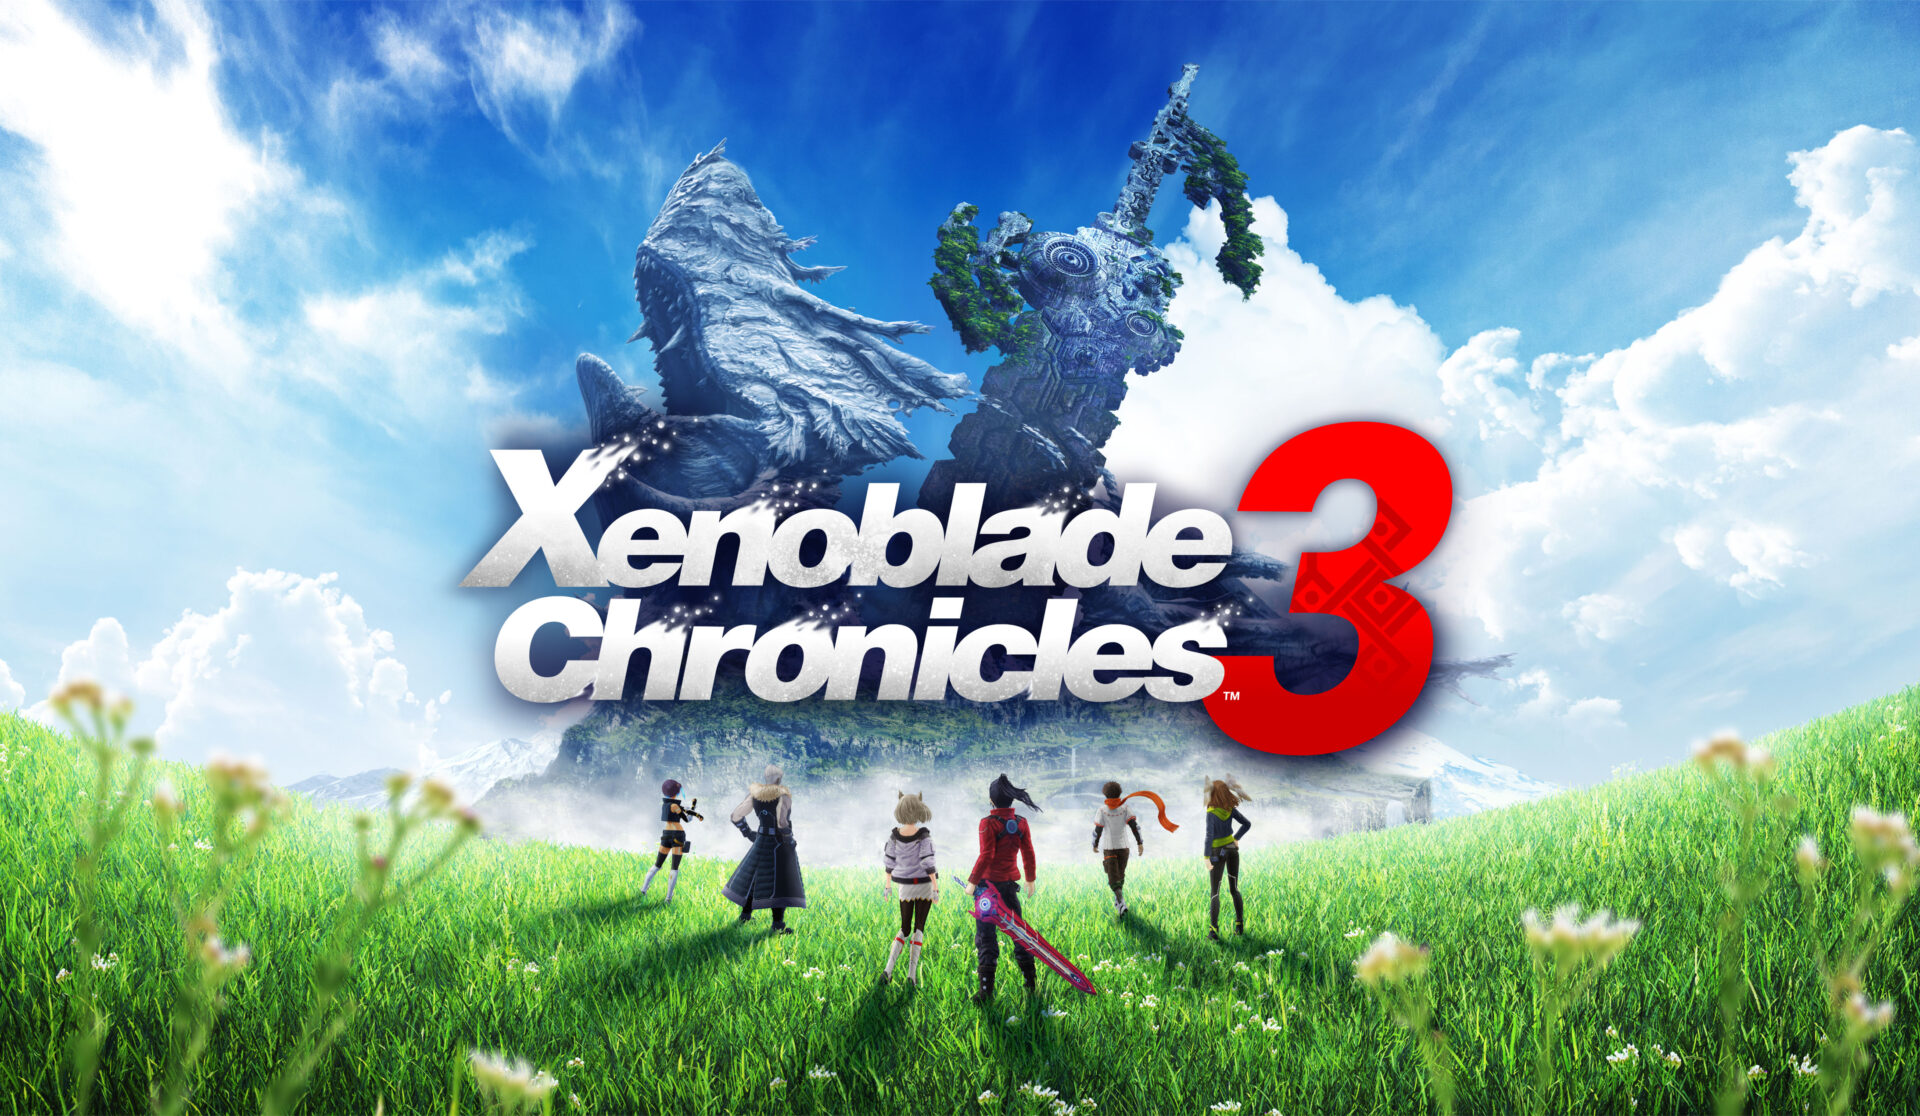 Releasedatumet för xenoblade chronicles 3 har tidigarelagts!